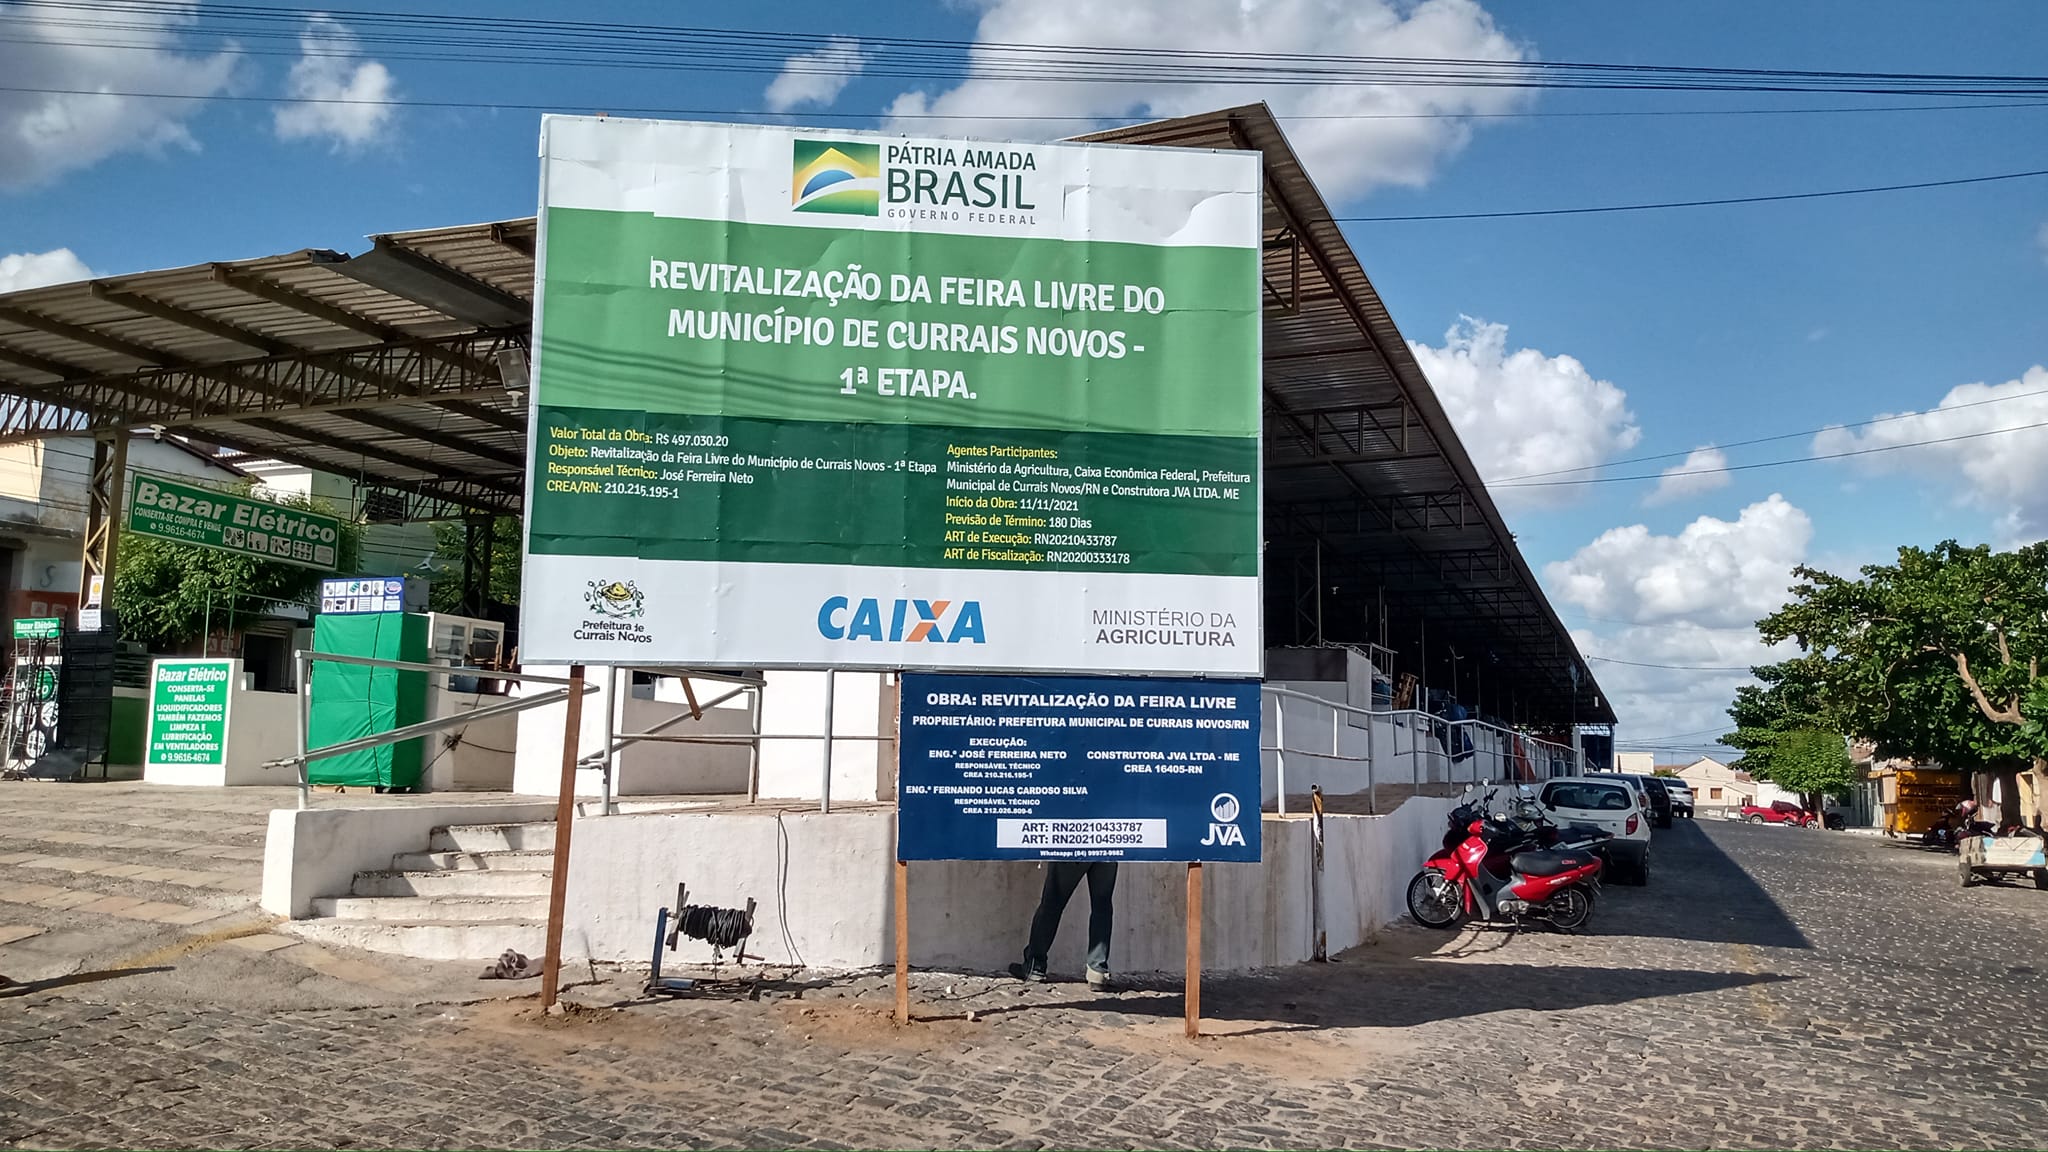 Construtora JVA continua com obras de Revitalização da feira livre do município de Currais Novos, confira